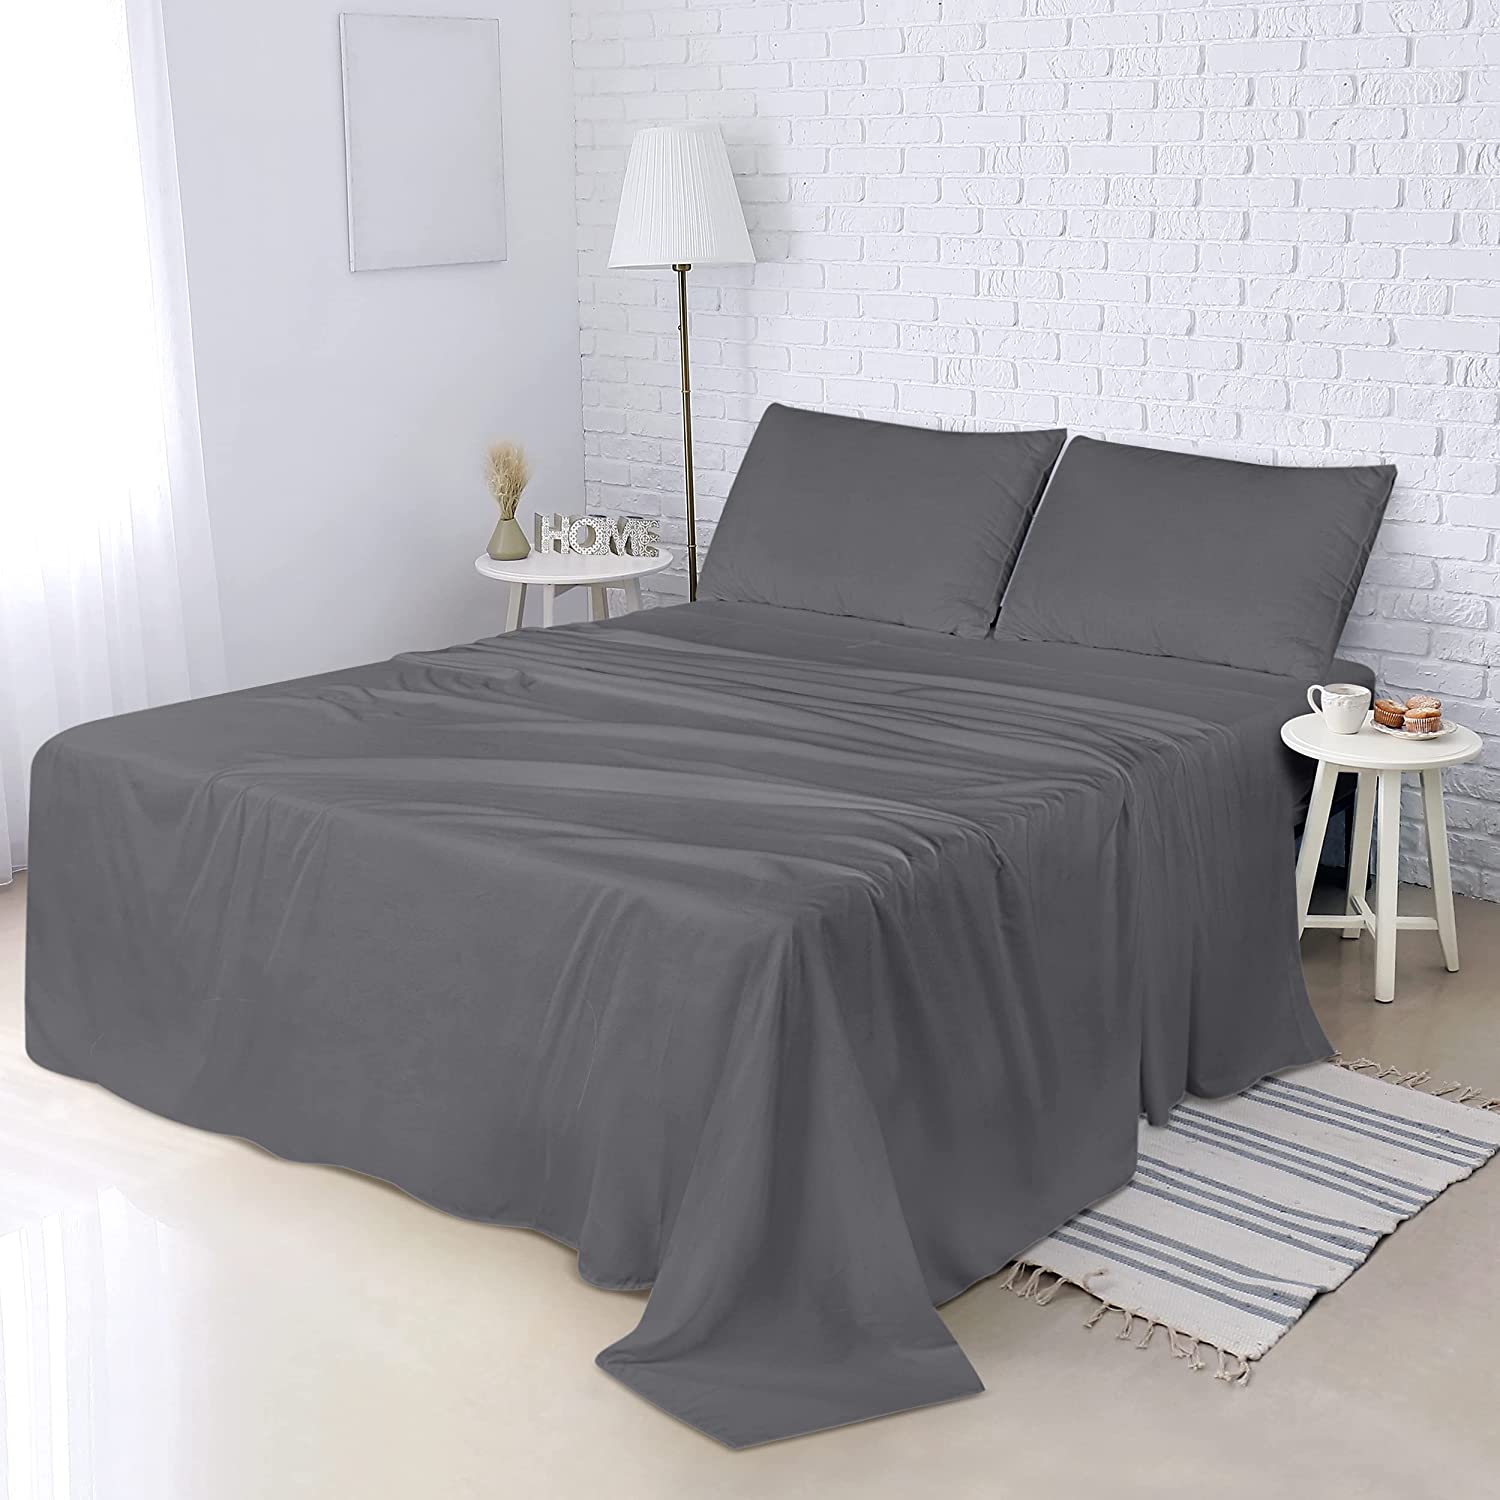 Buy Utopia Bedding Flat Sheet Brushed Microfiber $4.94 Piece – Utopia Deals